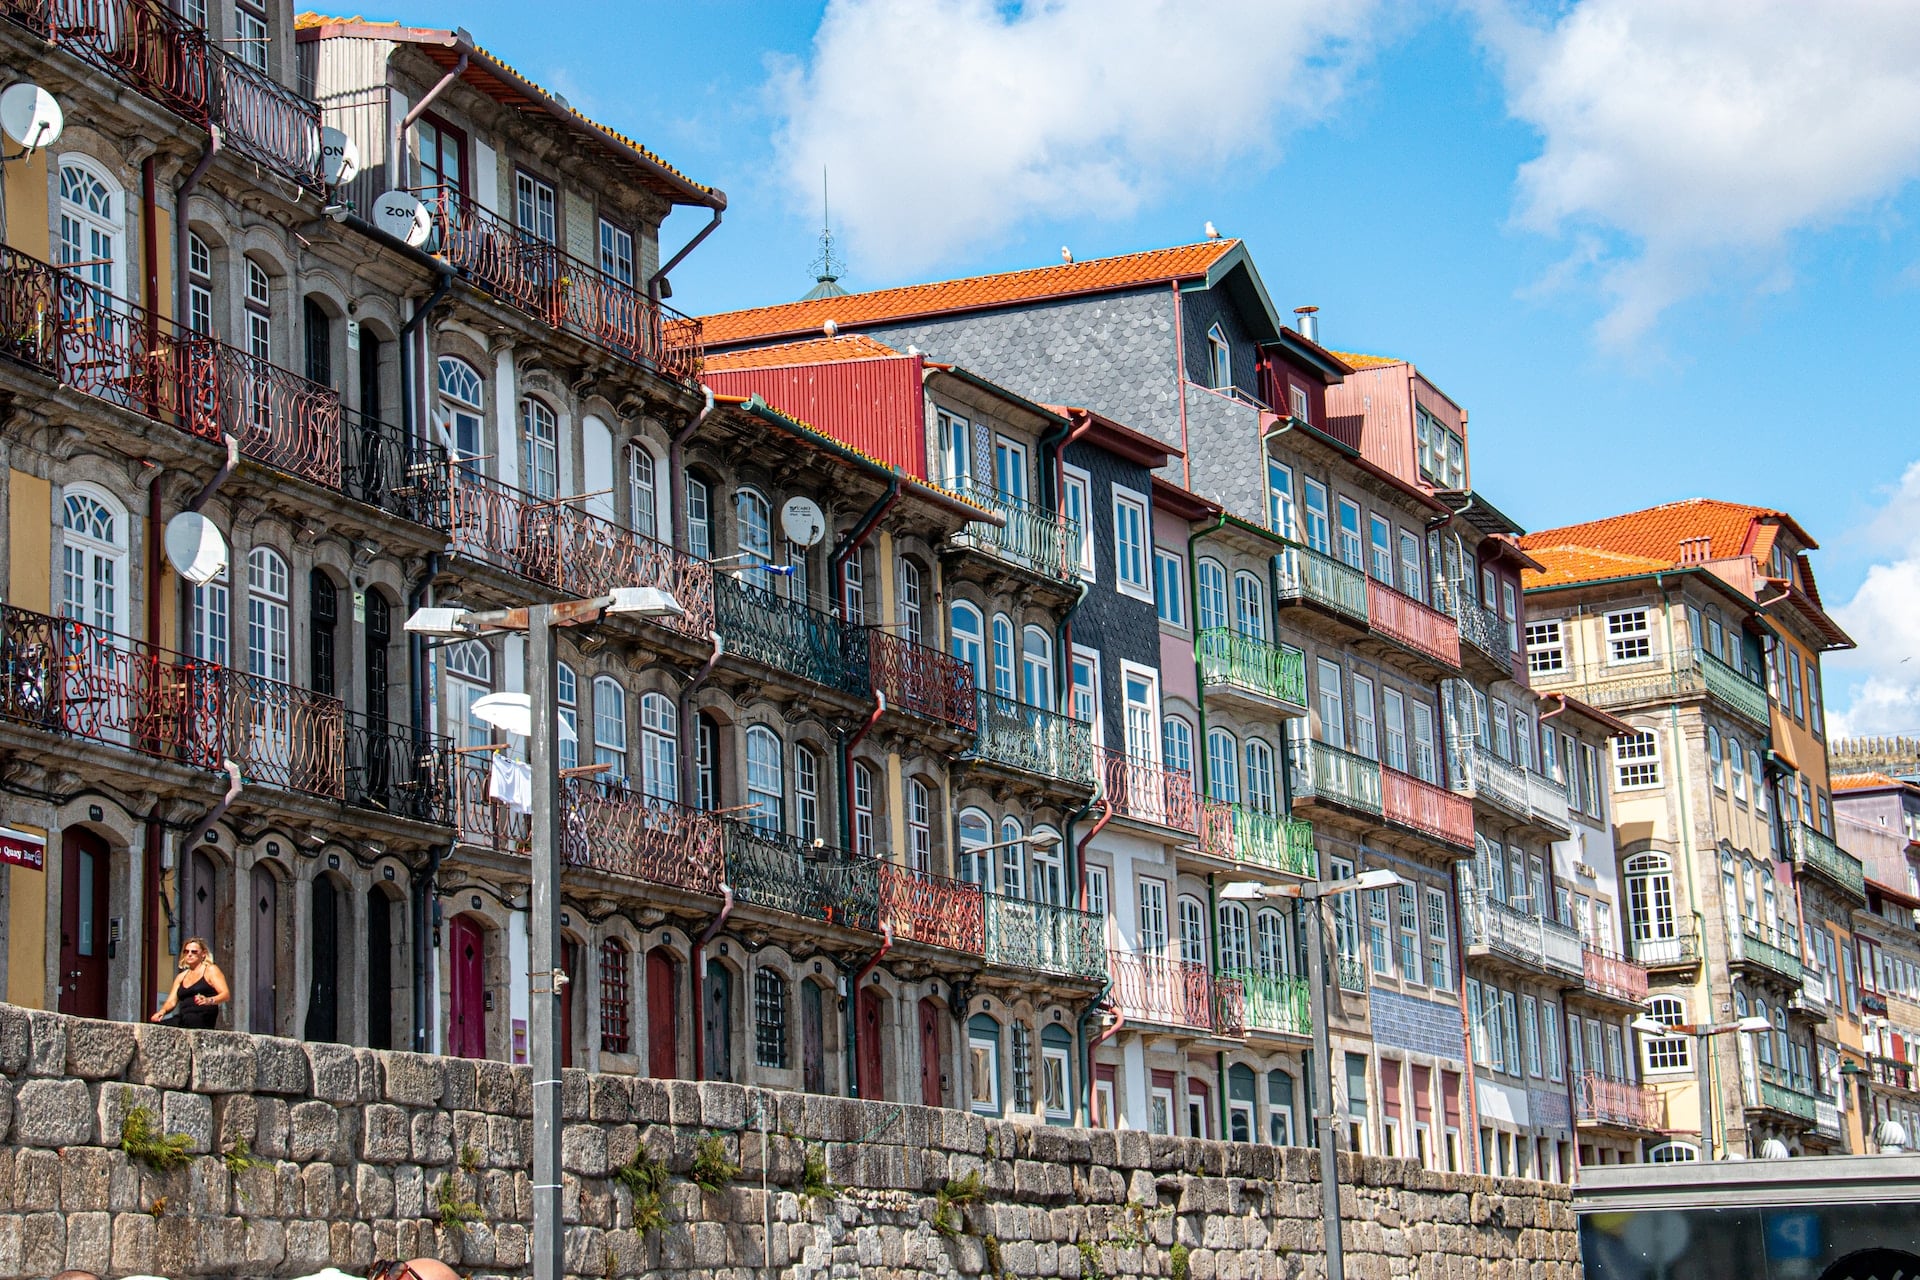 Ribeira es una de las zonas más pintorescas para alojarse en Oporto. Situada a orillas del río Duero, este barrio histórico está lleno de calles estrechas y empedradas, edificios coloridos y plazas llenas de vida